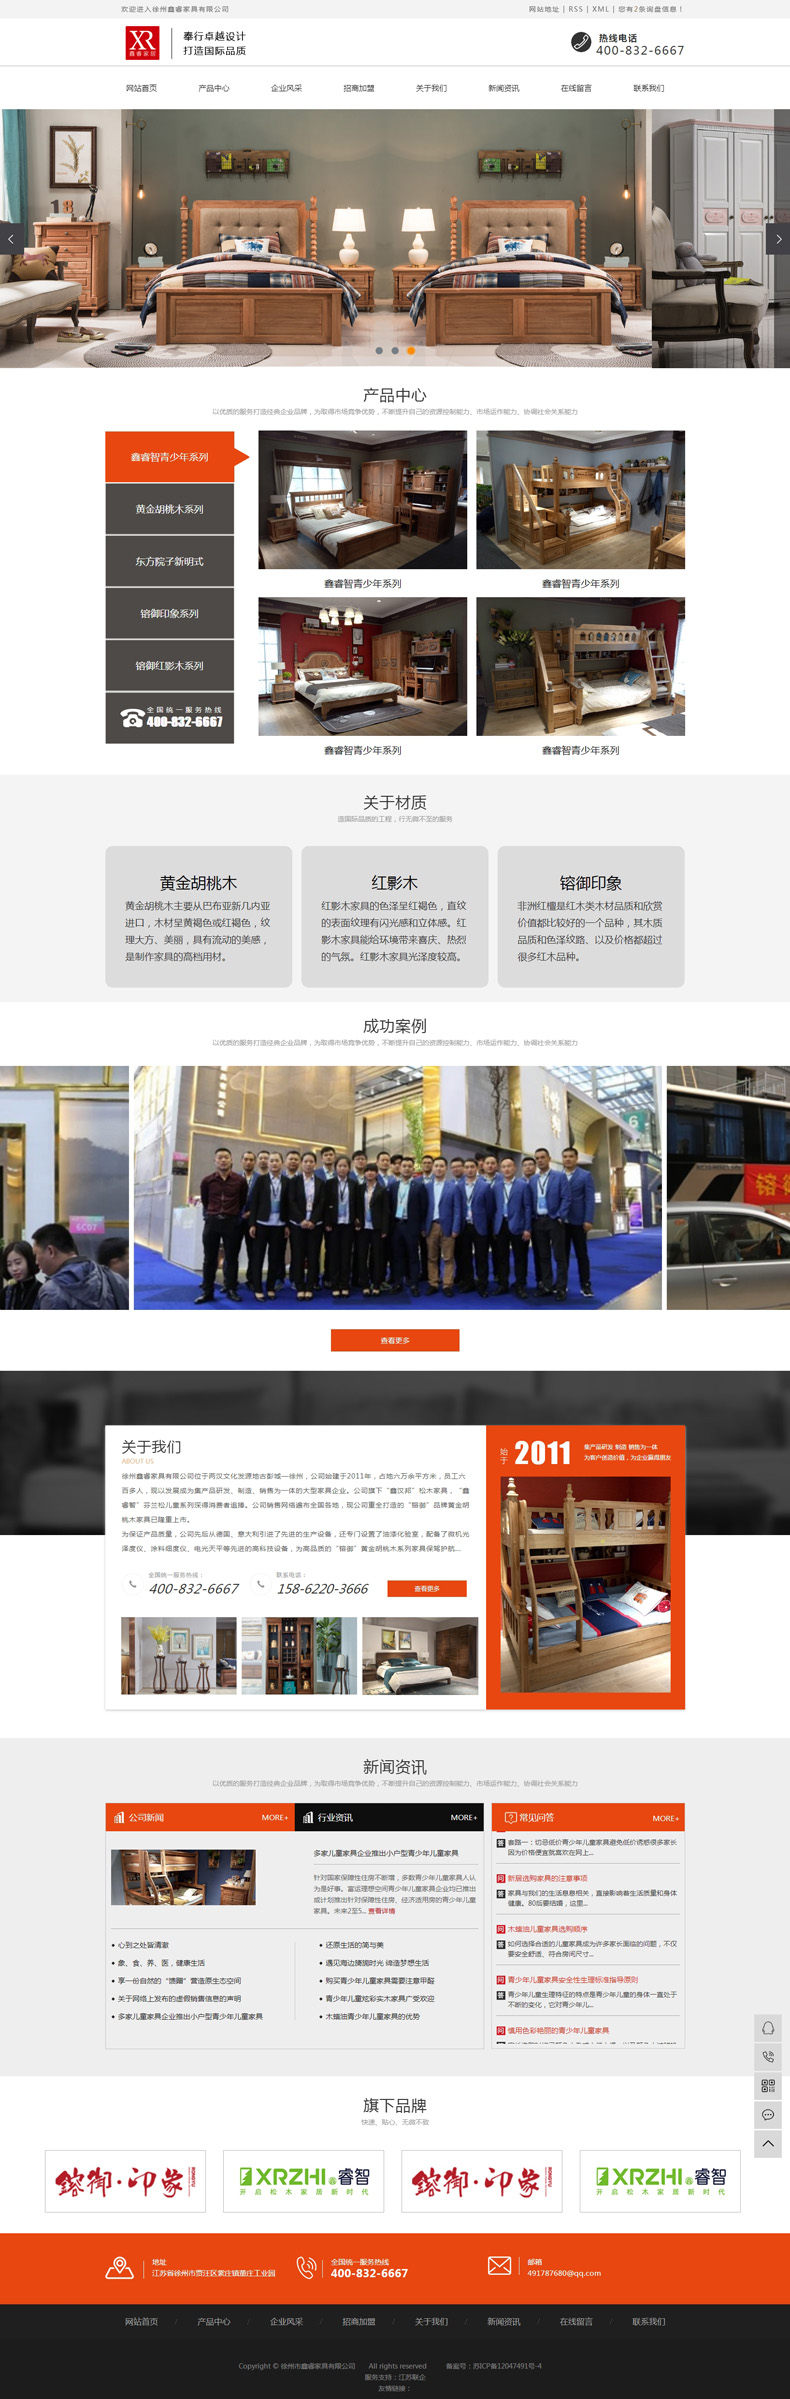 徐州网站建设案例